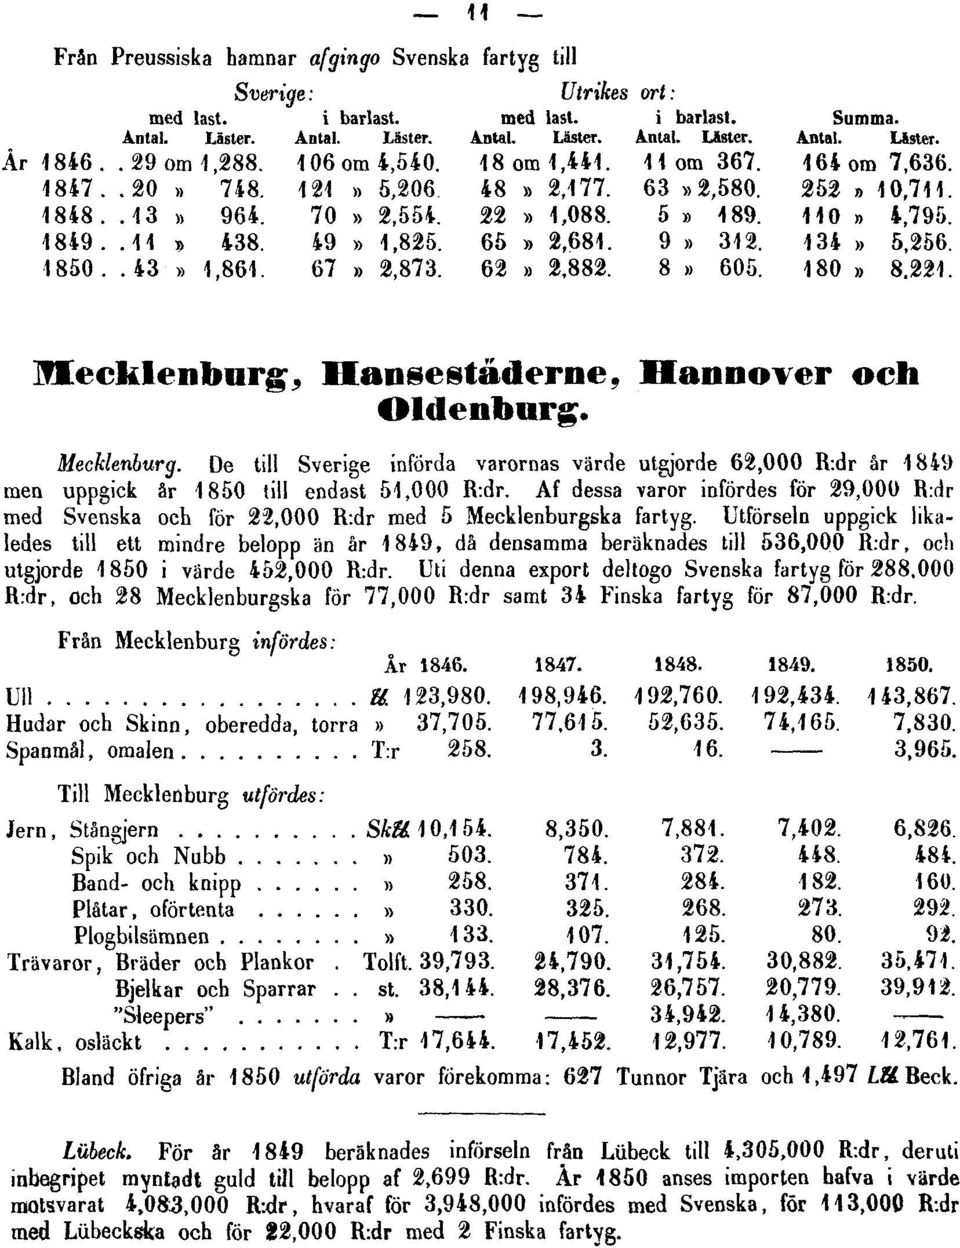 Af dessa varor infördes för 29,000 R:dr med Svenska och för 22,000 R:dr med 5 Mecklenburgska fartyg.